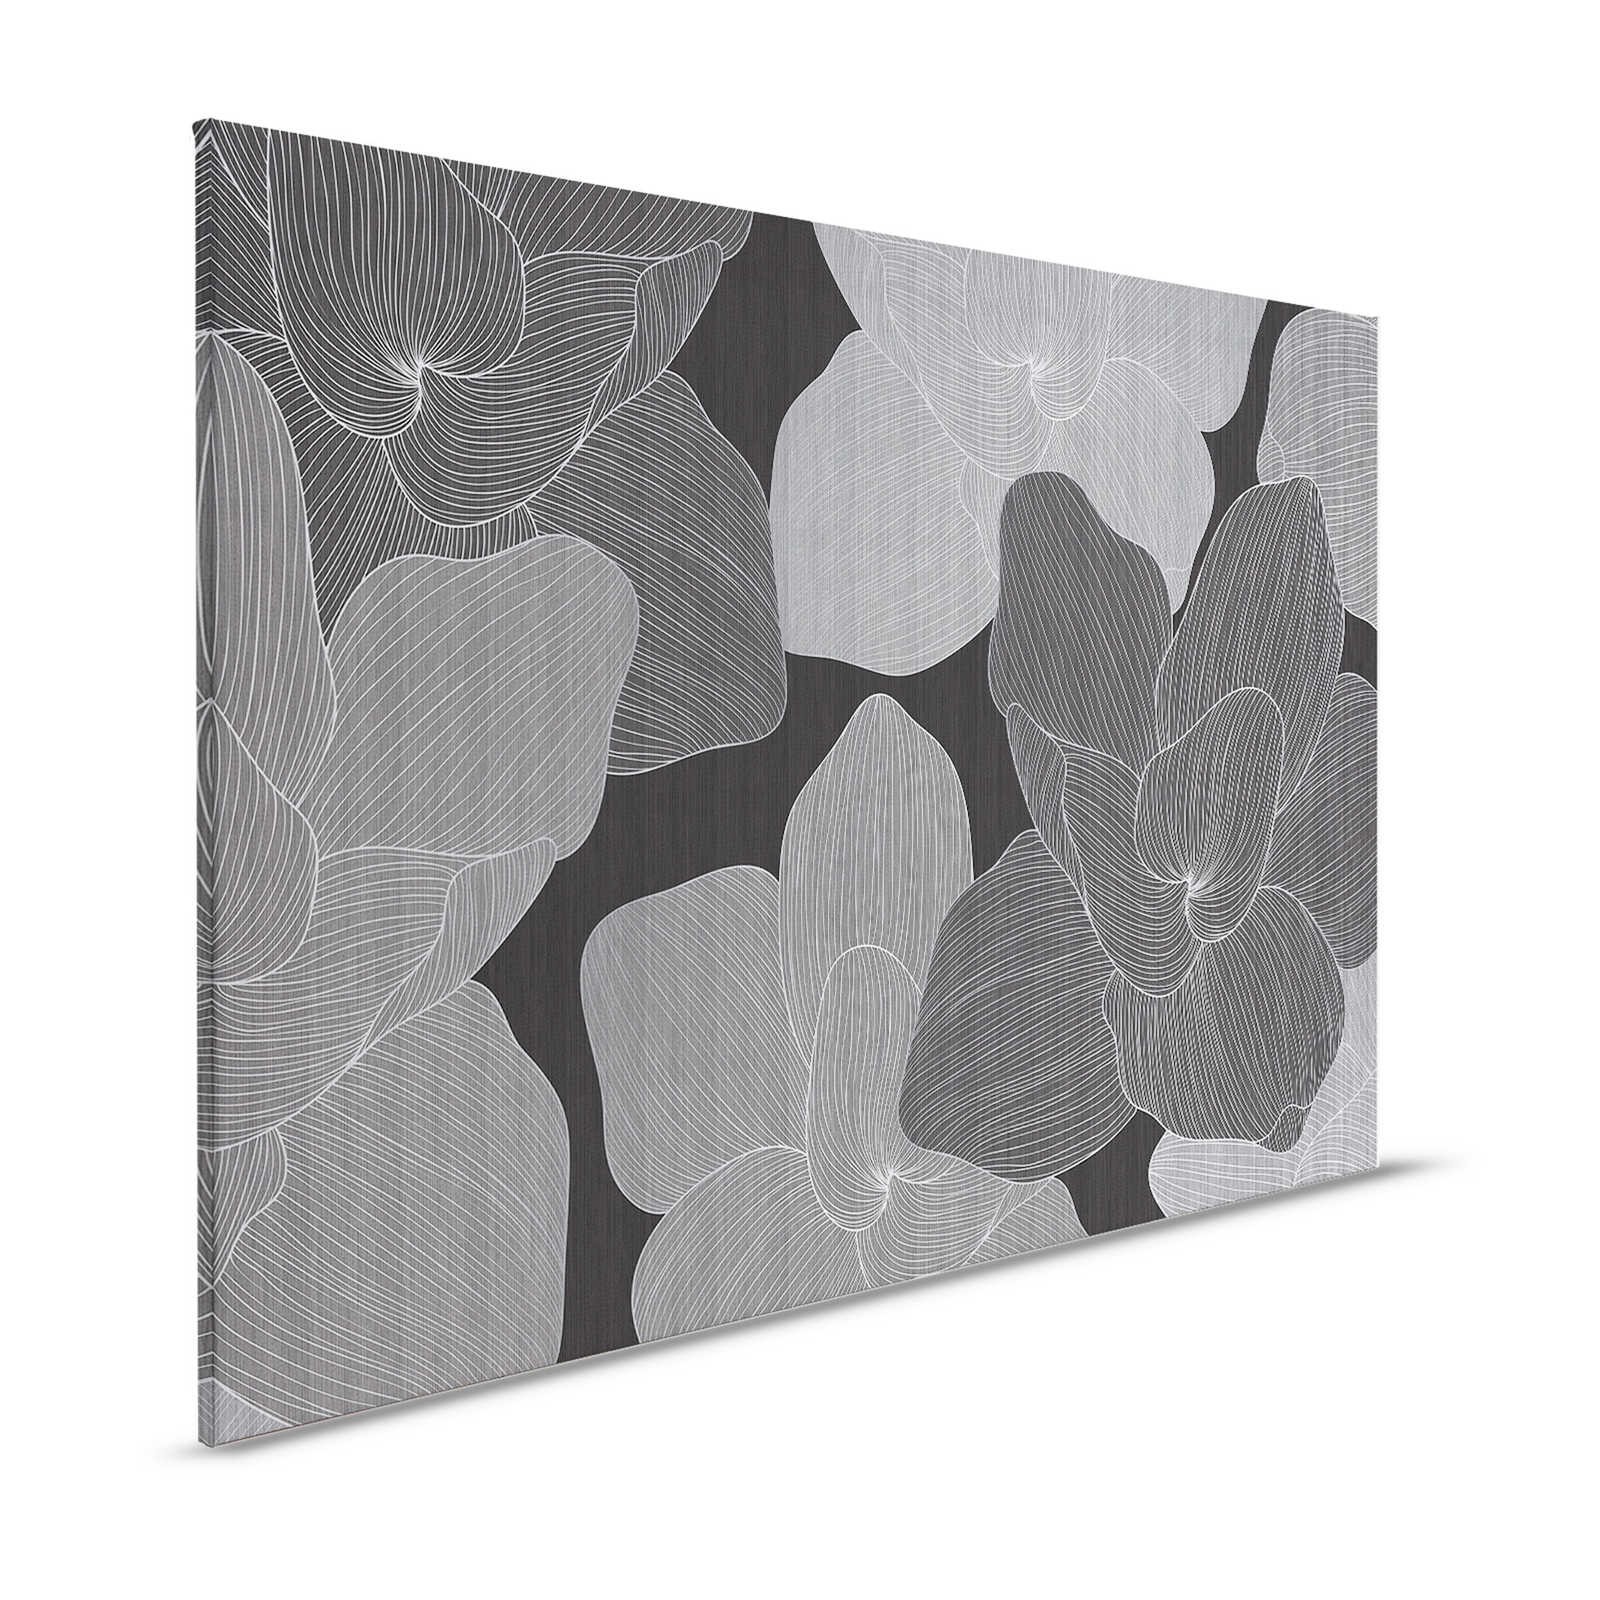 Secret Place 1 - Monochrome Canvas Painting Flowers, Black & Grey - 1.20 m x 0.80 m
